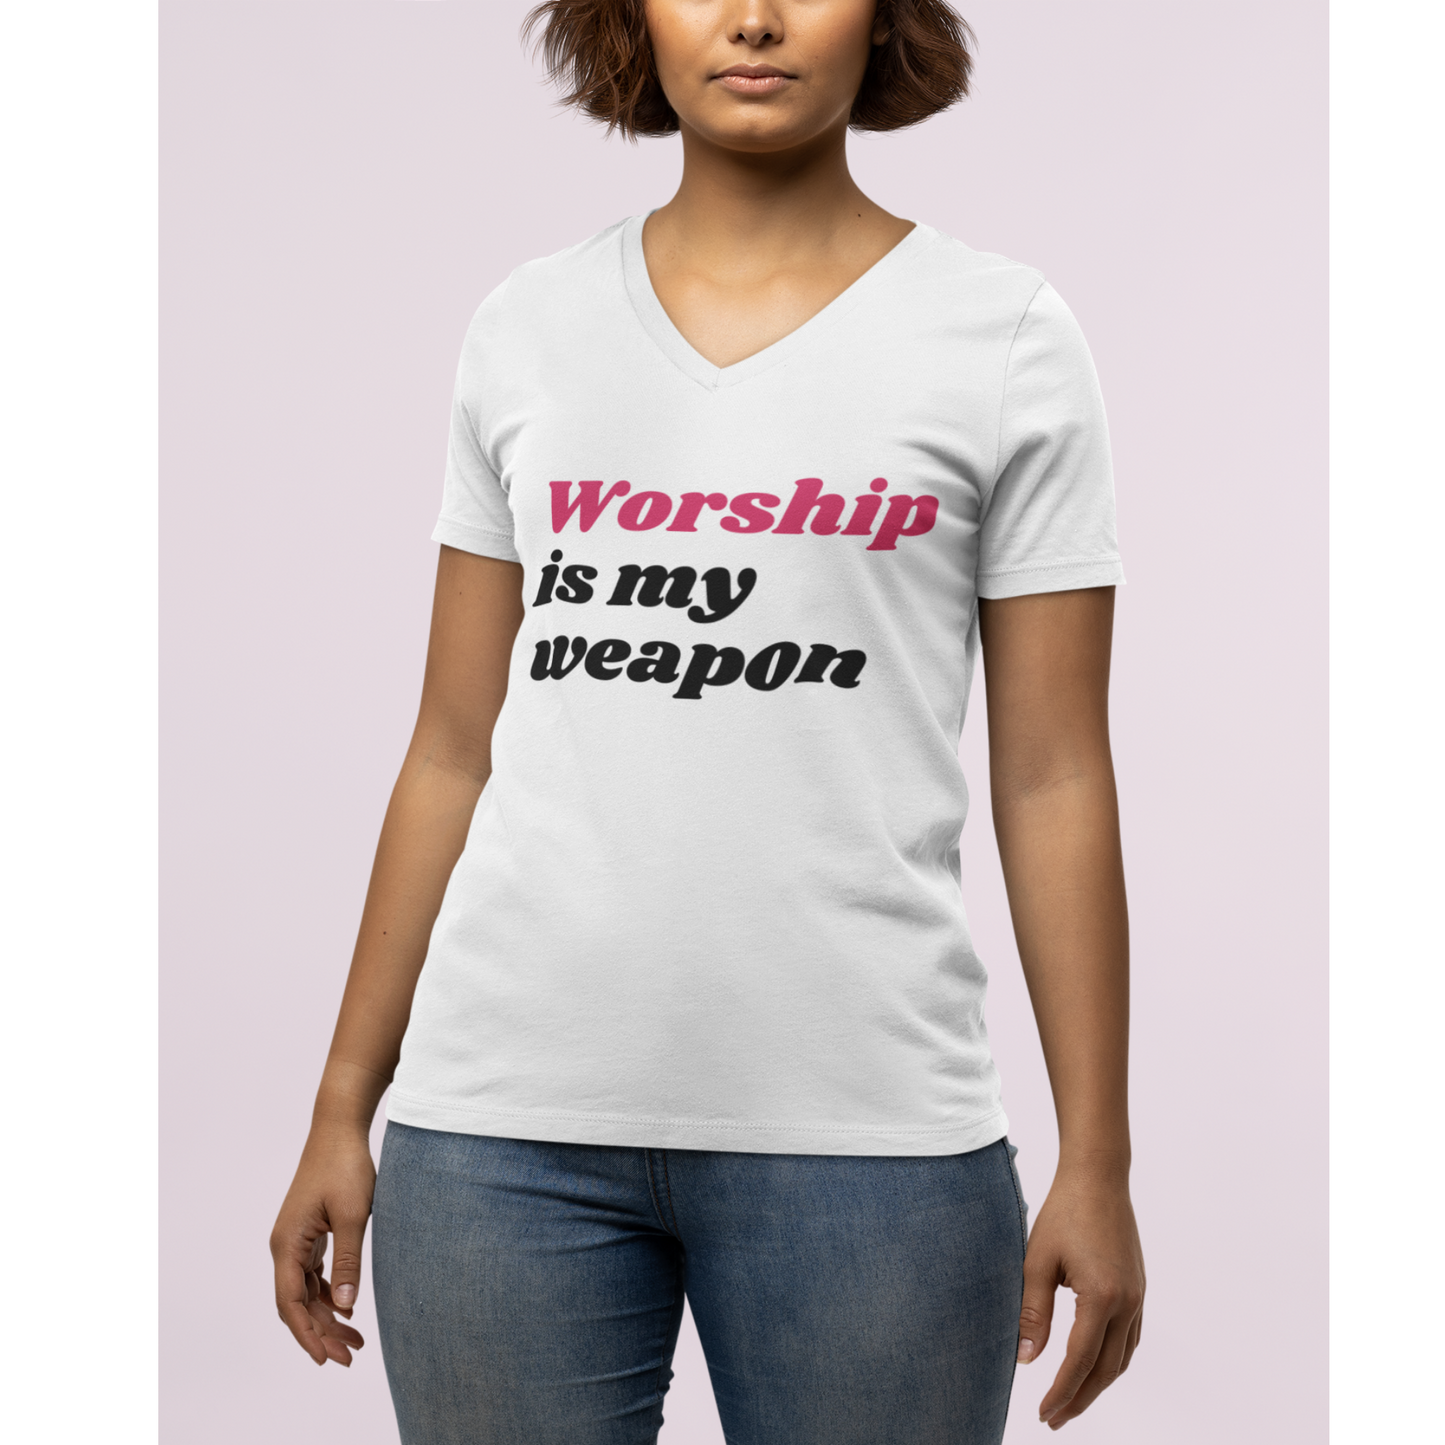 Let's Praise God, Worship God Tee, Christian Apparel, Faith T-Shirt